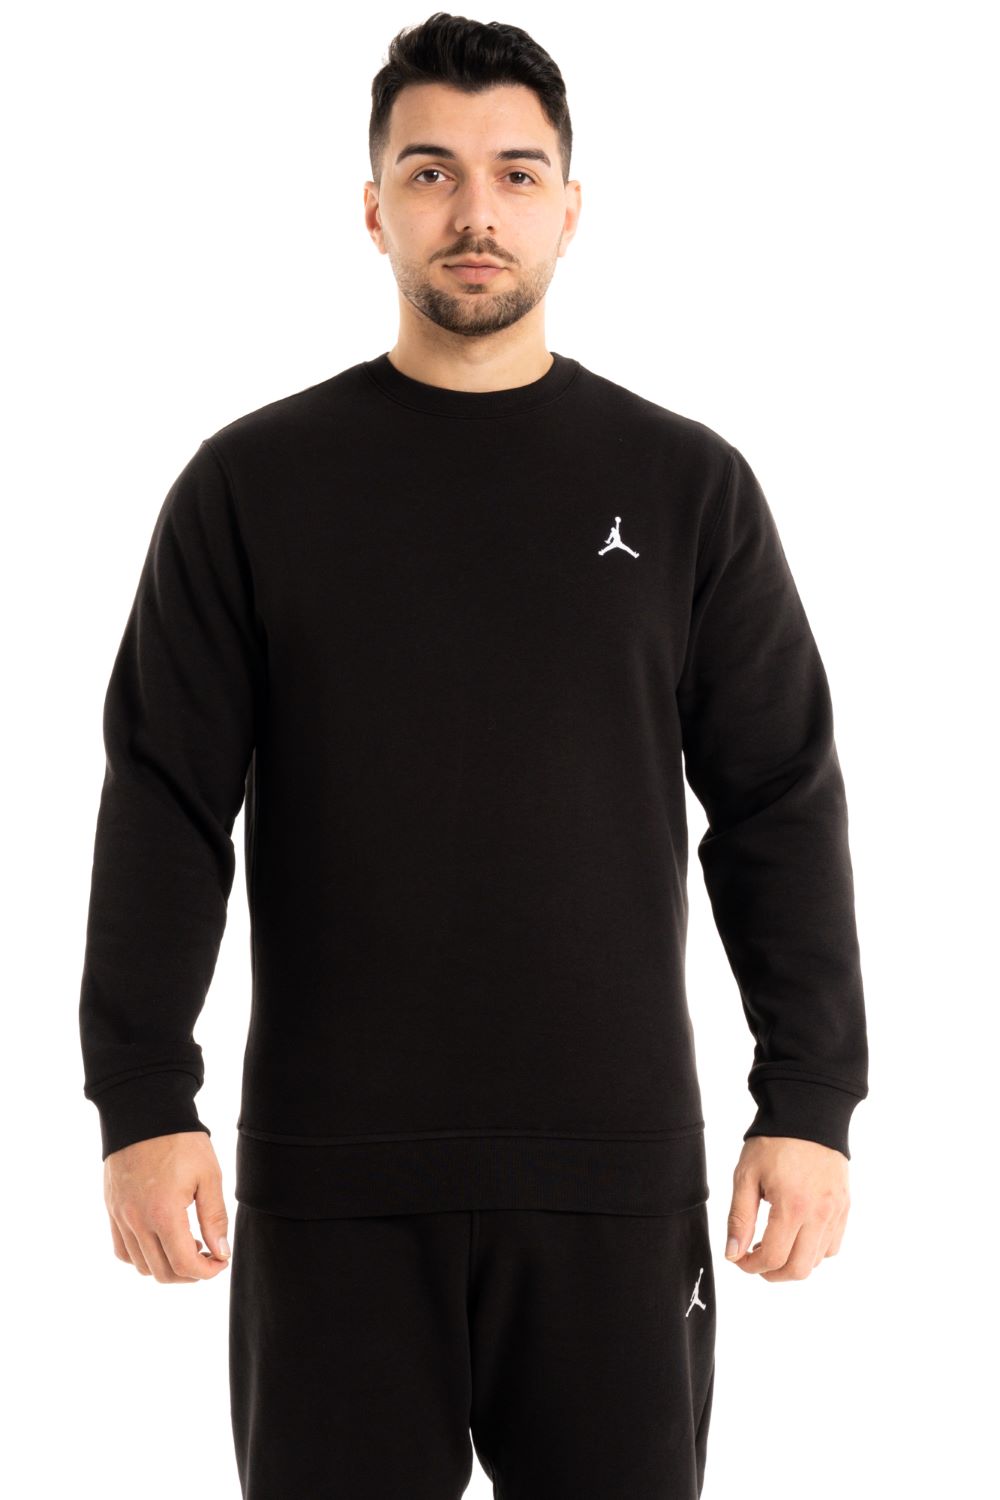 Jordan Brooklyn Fleece Sweatshirt